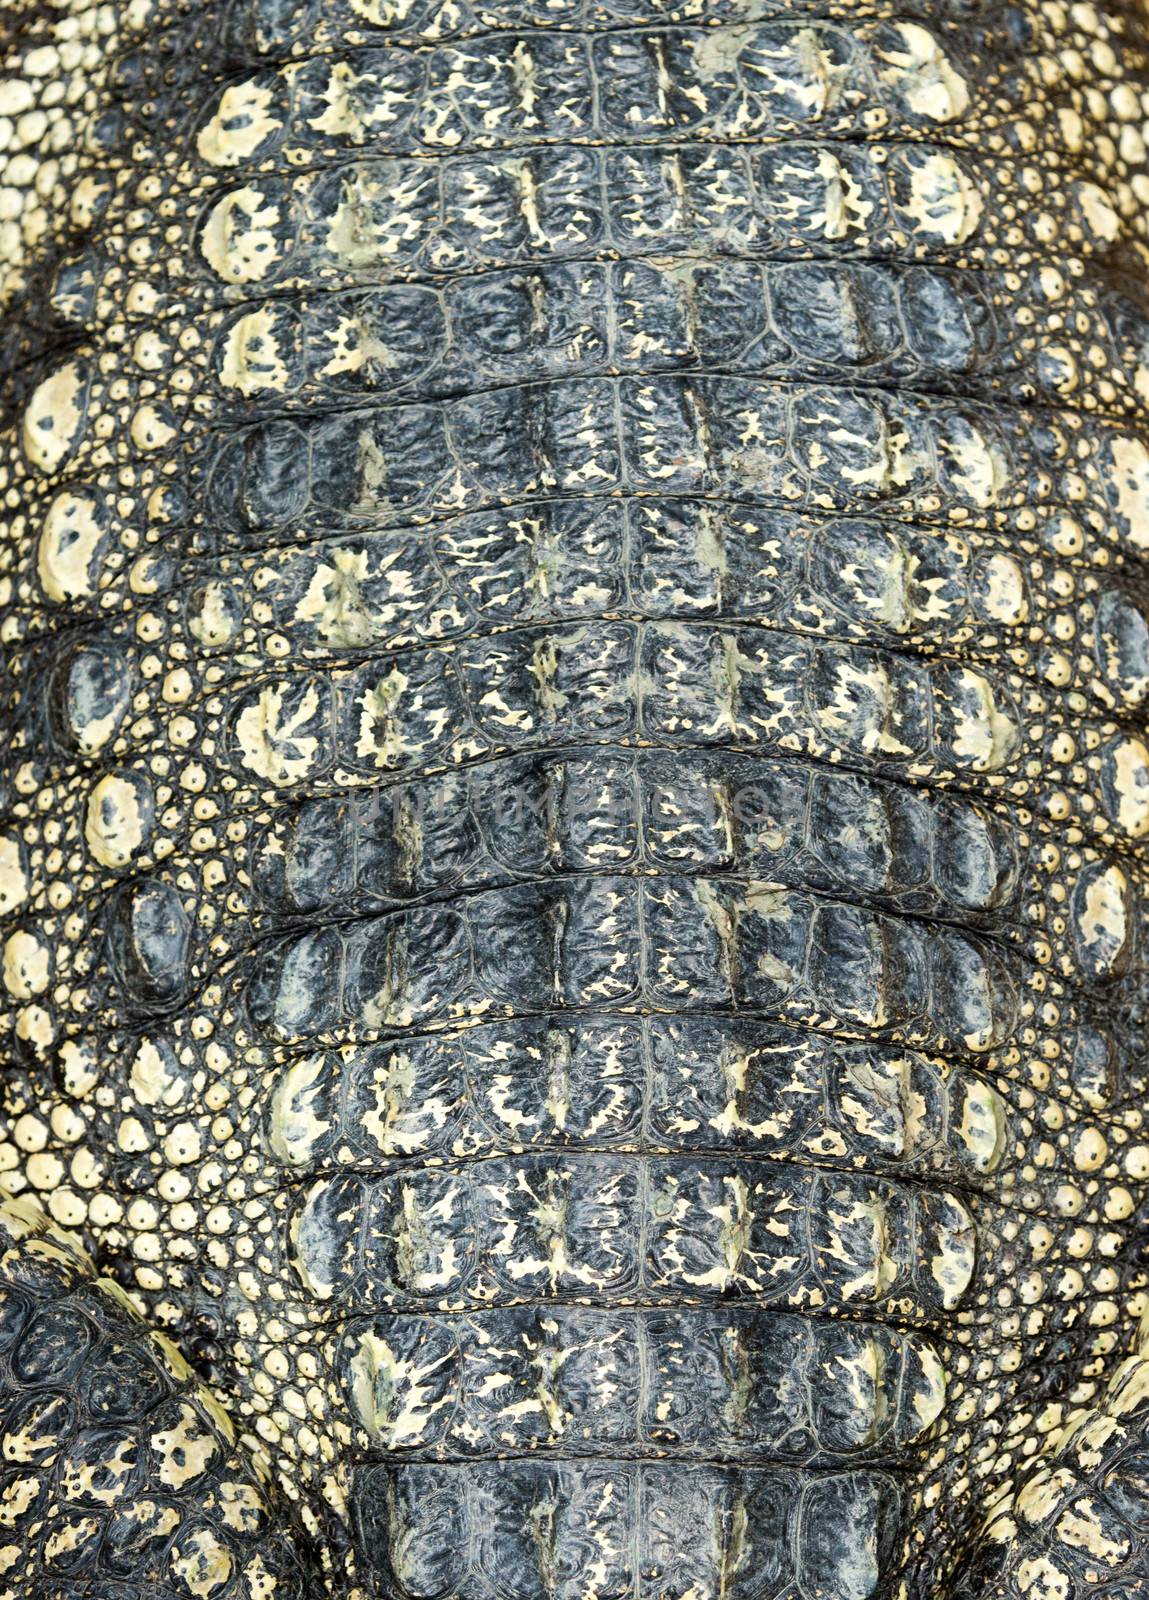 Crocodile skin texture by Pakhnyushchyy